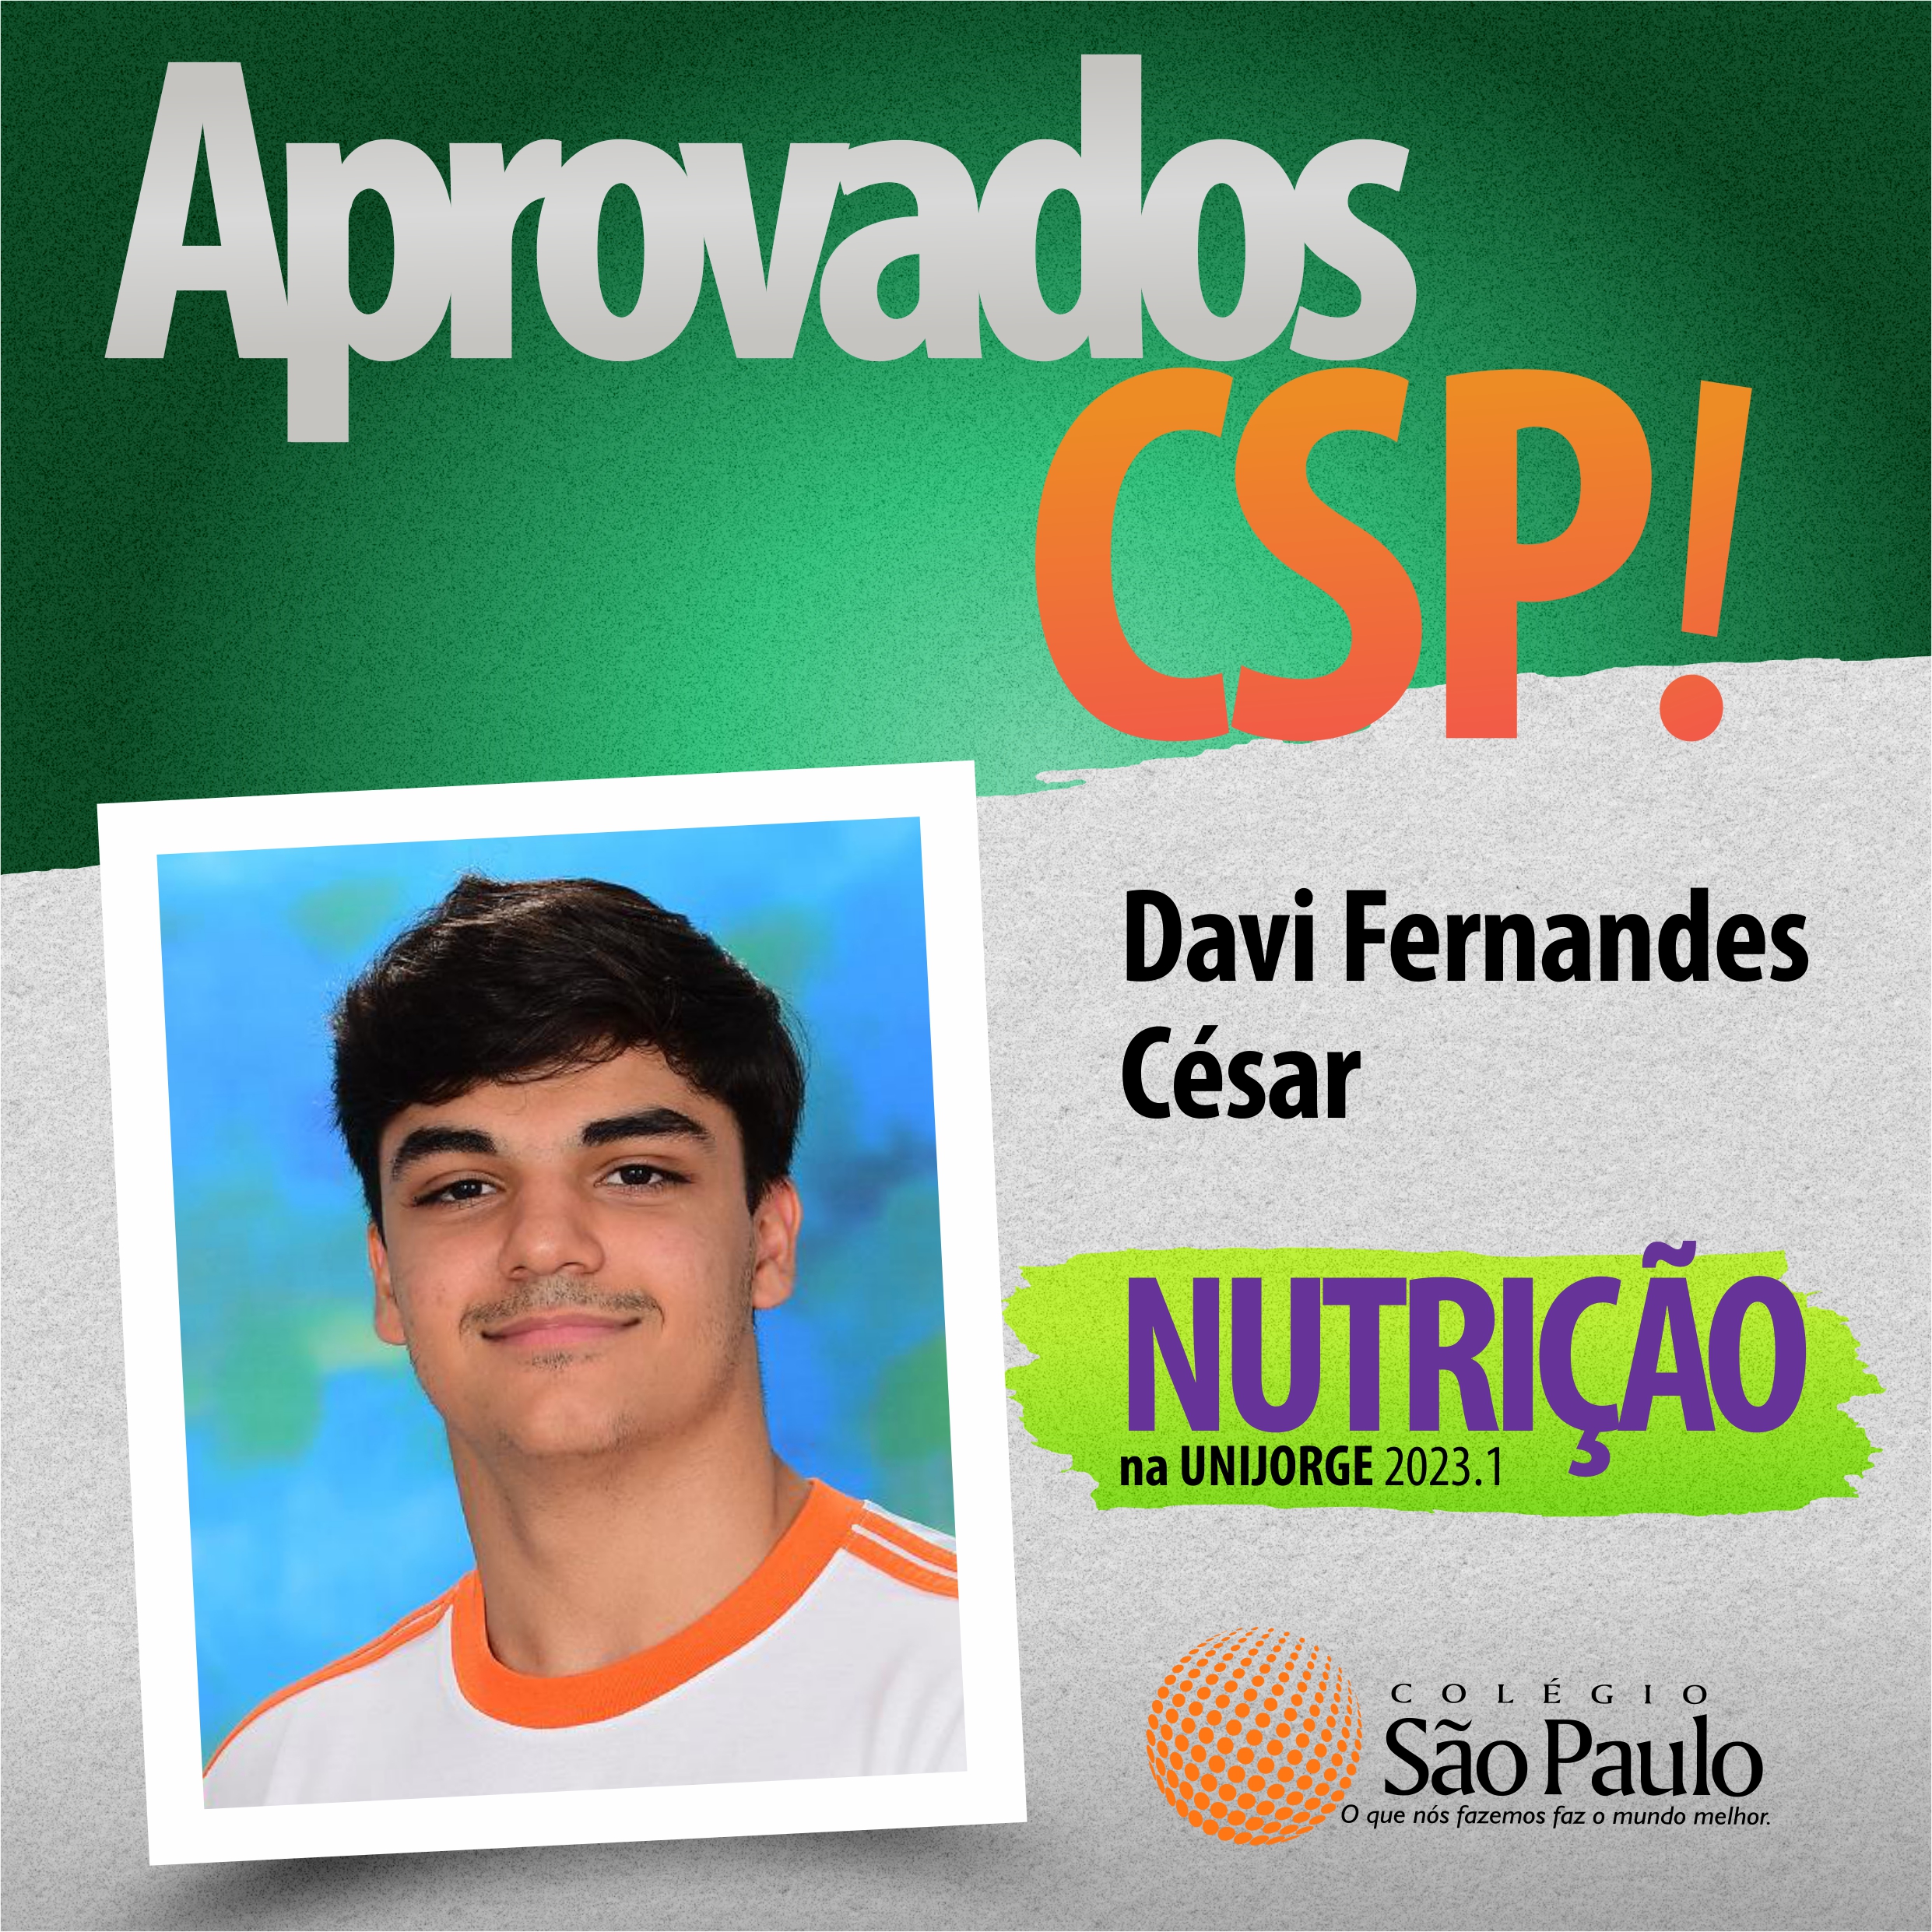 Davi Fernandes - Nutrição